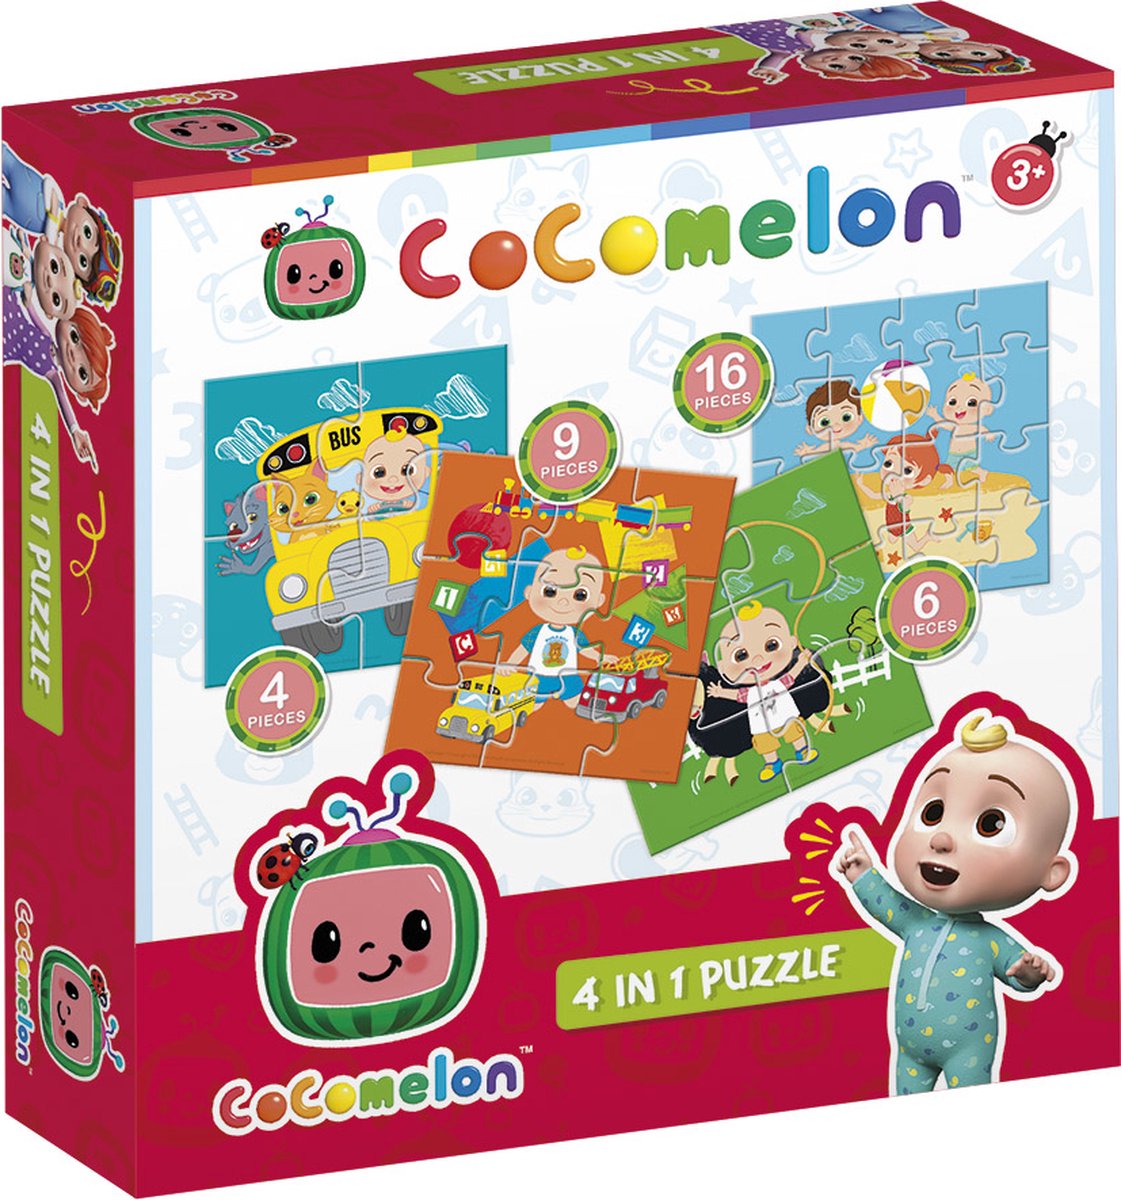 Bambolino Toys - Cocomelon 4 in 1 puzzel - 4+6+9+16 stukjes - kinderpuzzel - leren puzzelen - educatie peuter speelgoed -puzzel 3 jaar en ouder - cadeautip